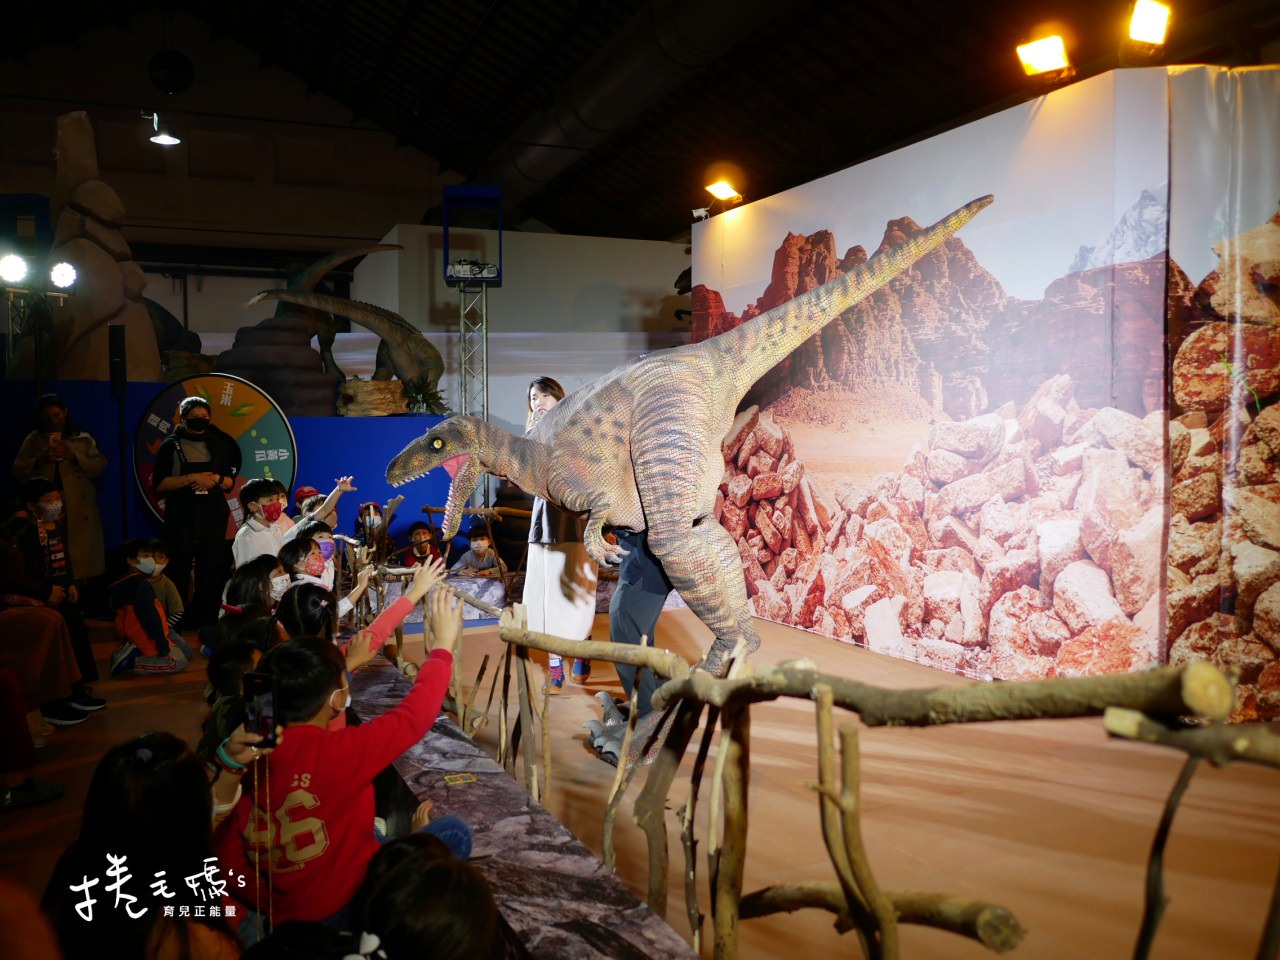 恐龍展 侏儸紀 恐龍 展覽 春節出遊 親子行程 雨天備案P1110660